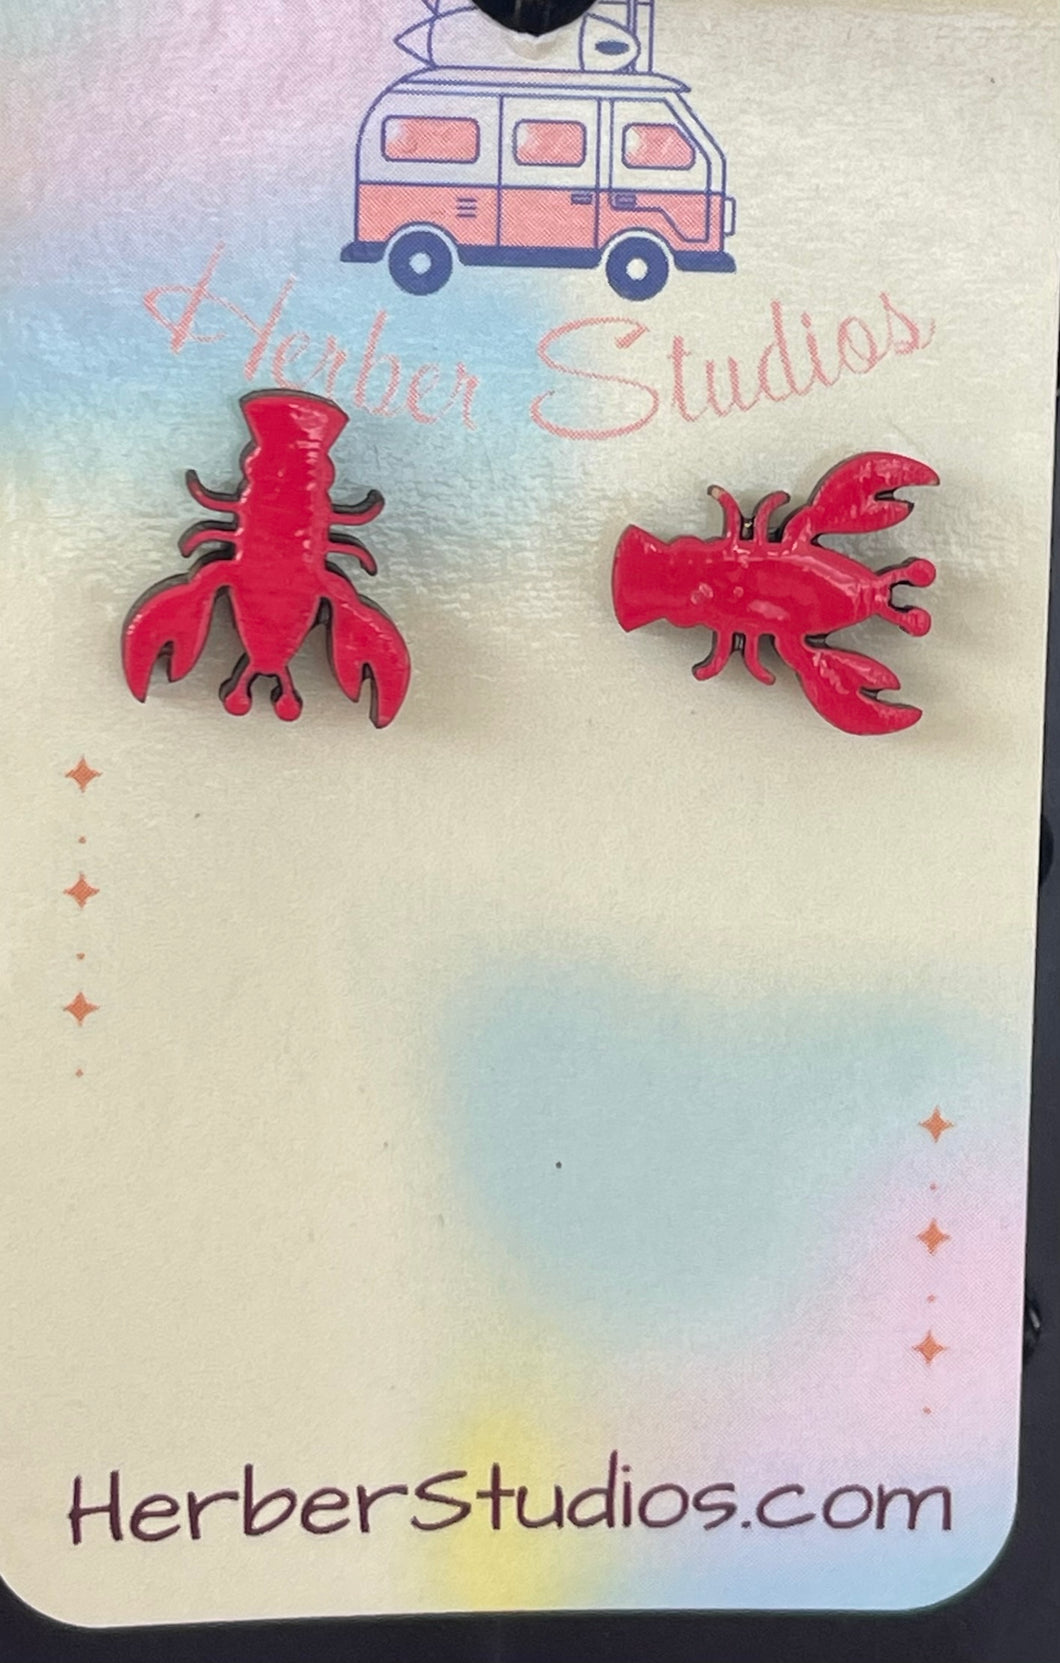 Red Lobster Stud Earrings